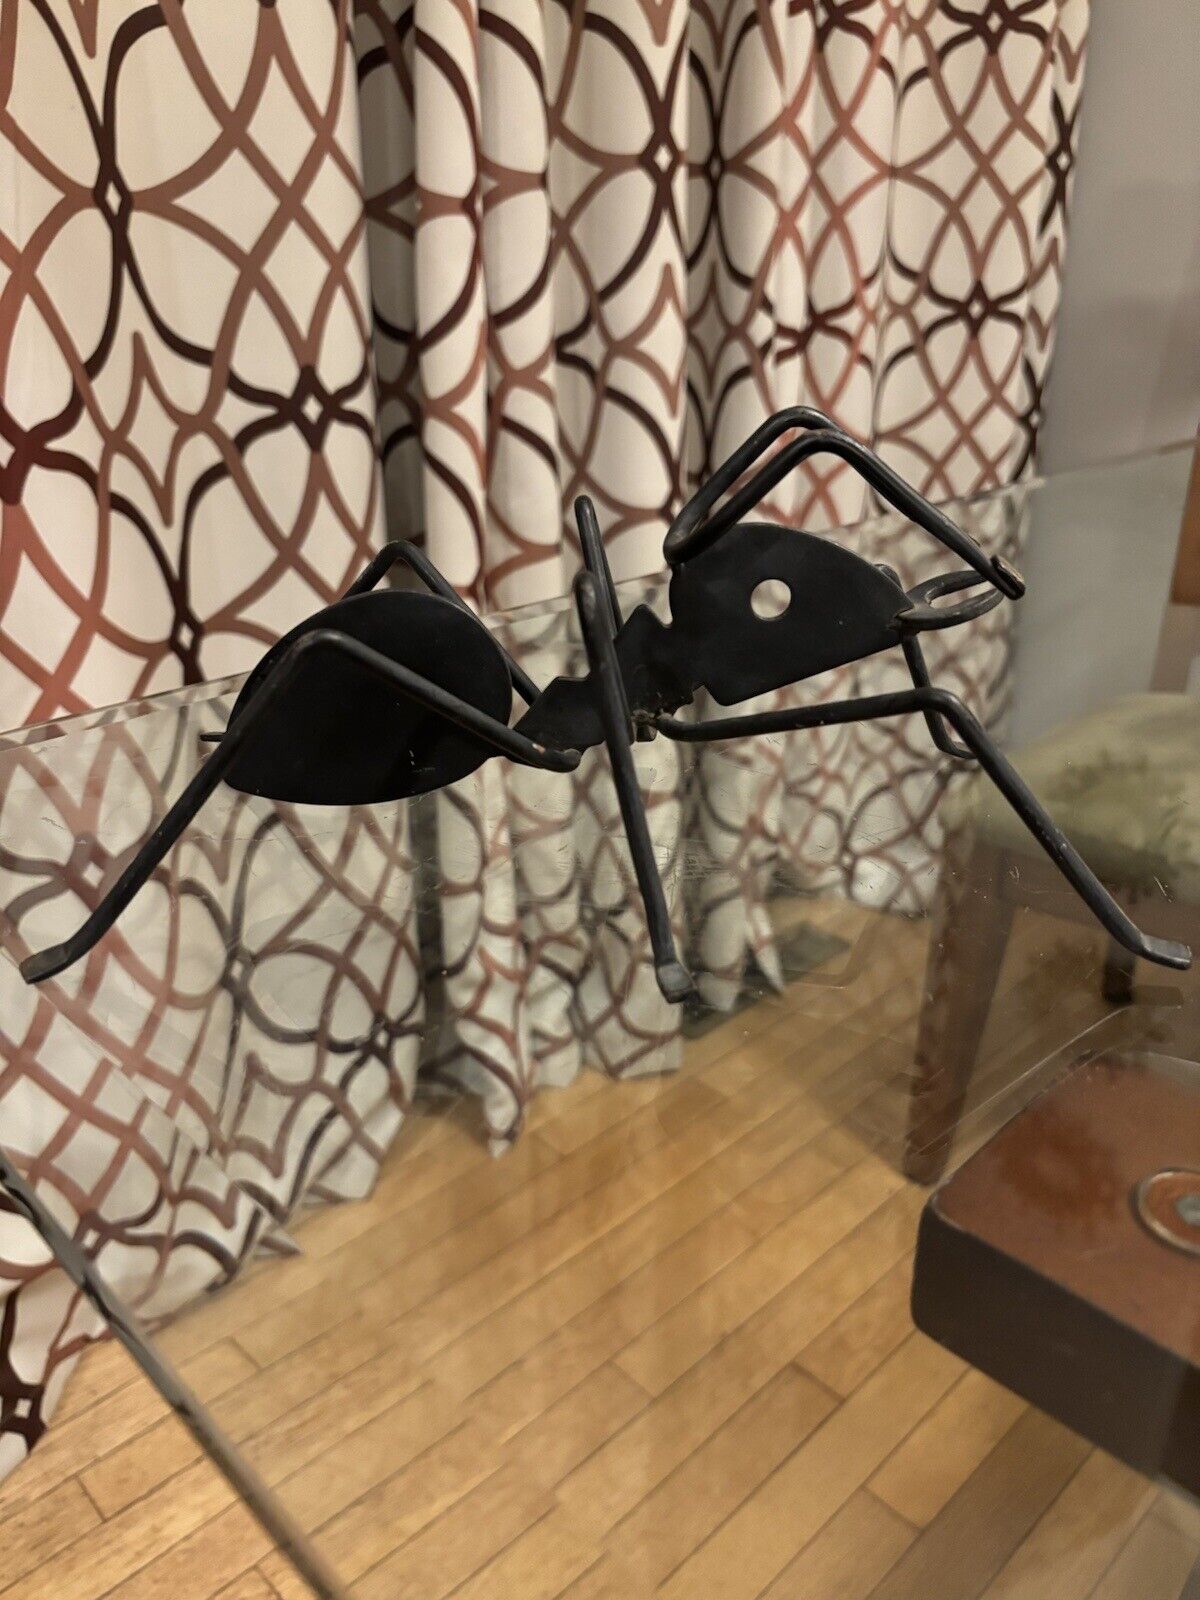 RARE FIND Vintage Large Black Metal Ant Sculpture 